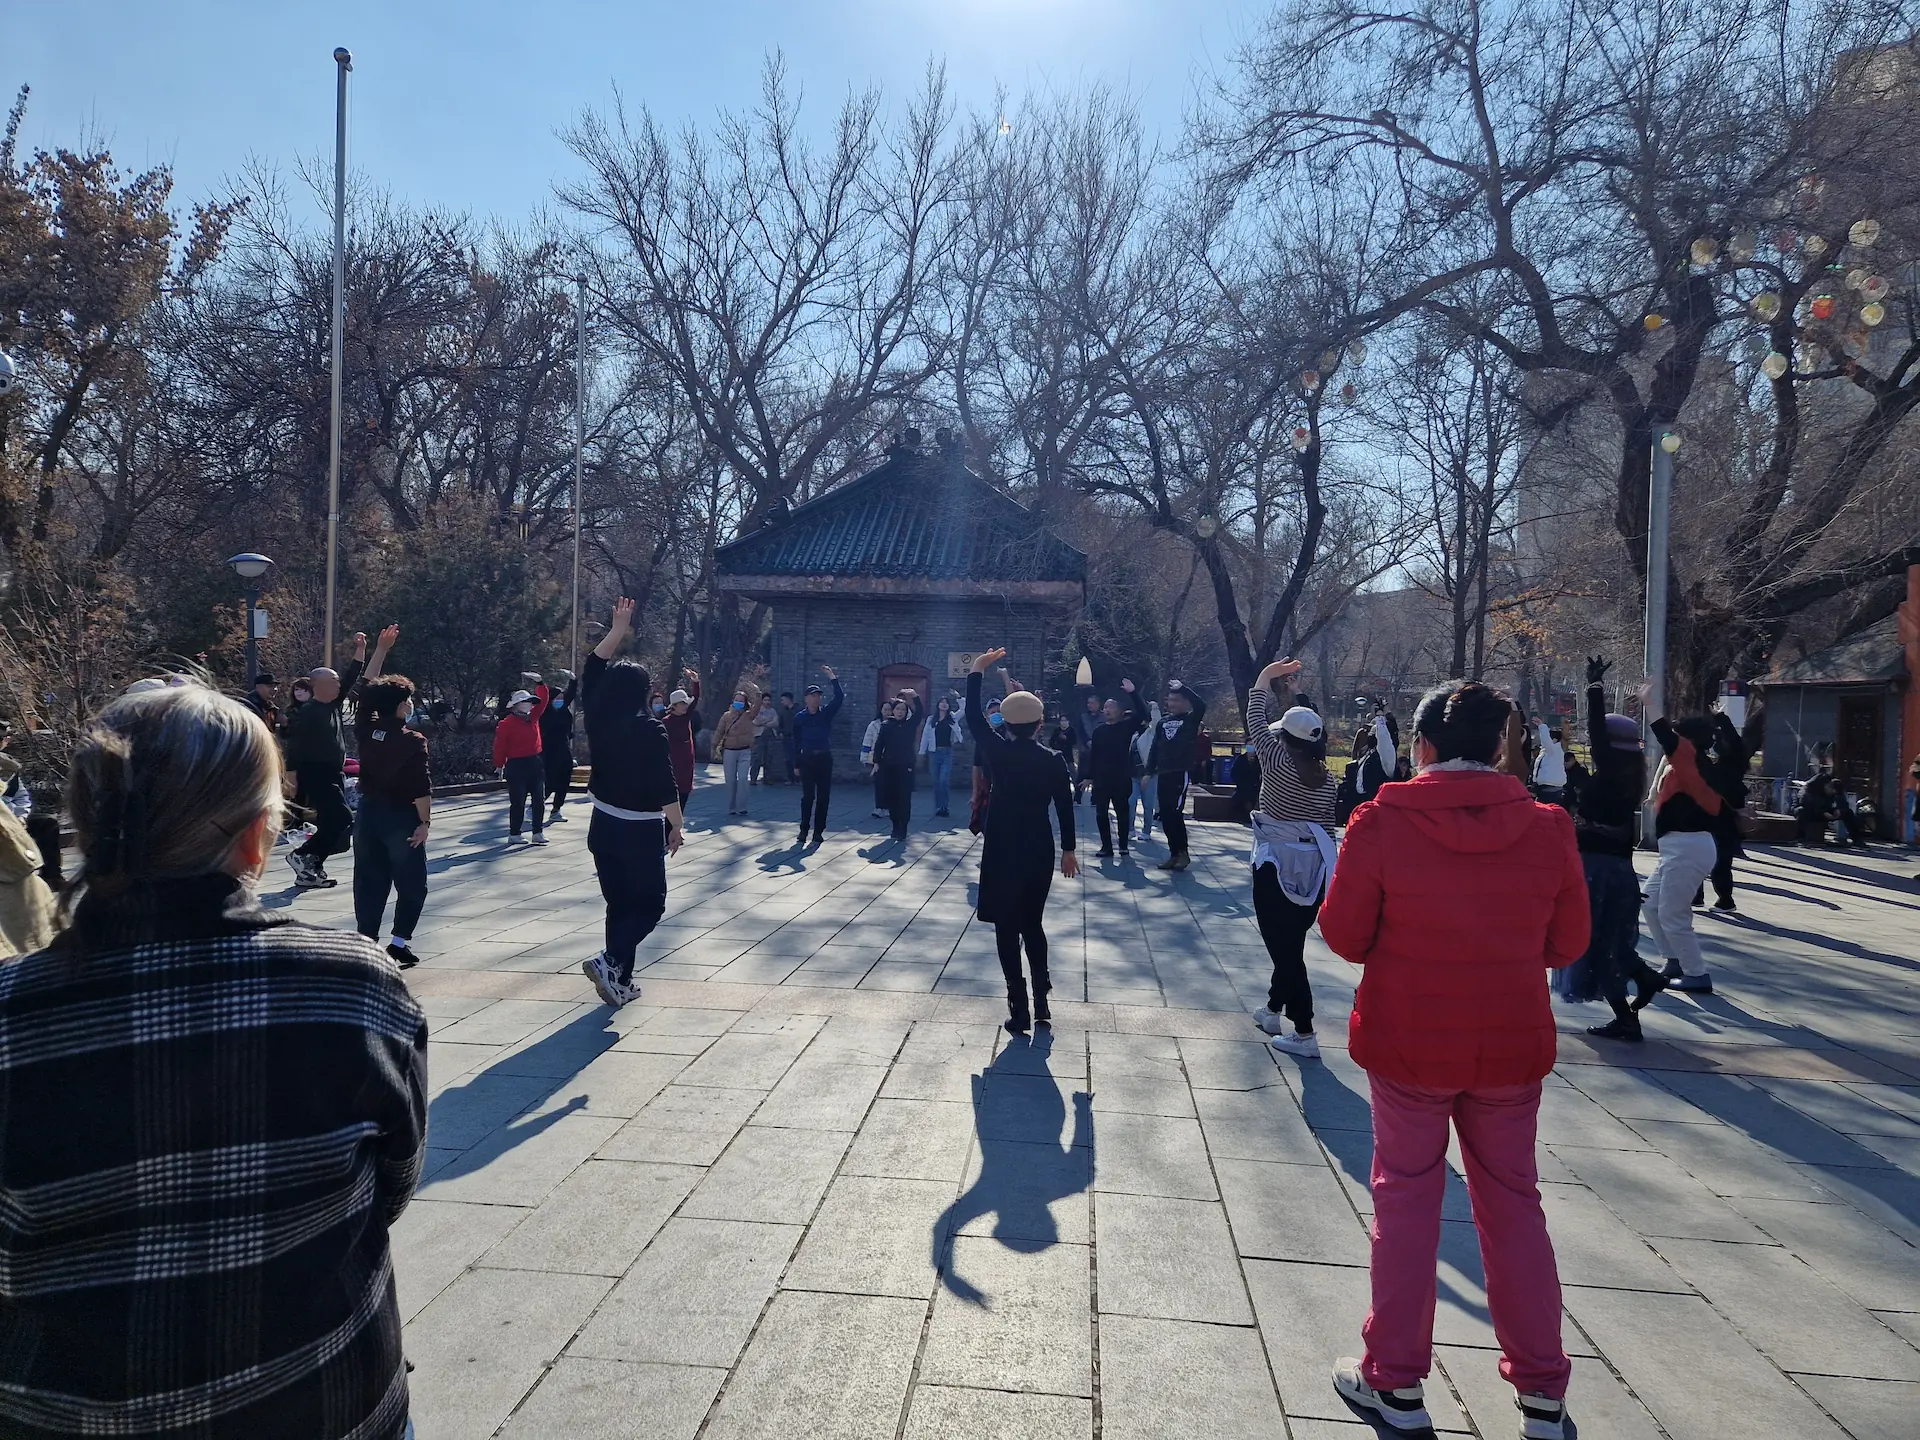 Sur une place du parc, des personnes forment une ronde et dansent de façon synchronisée.